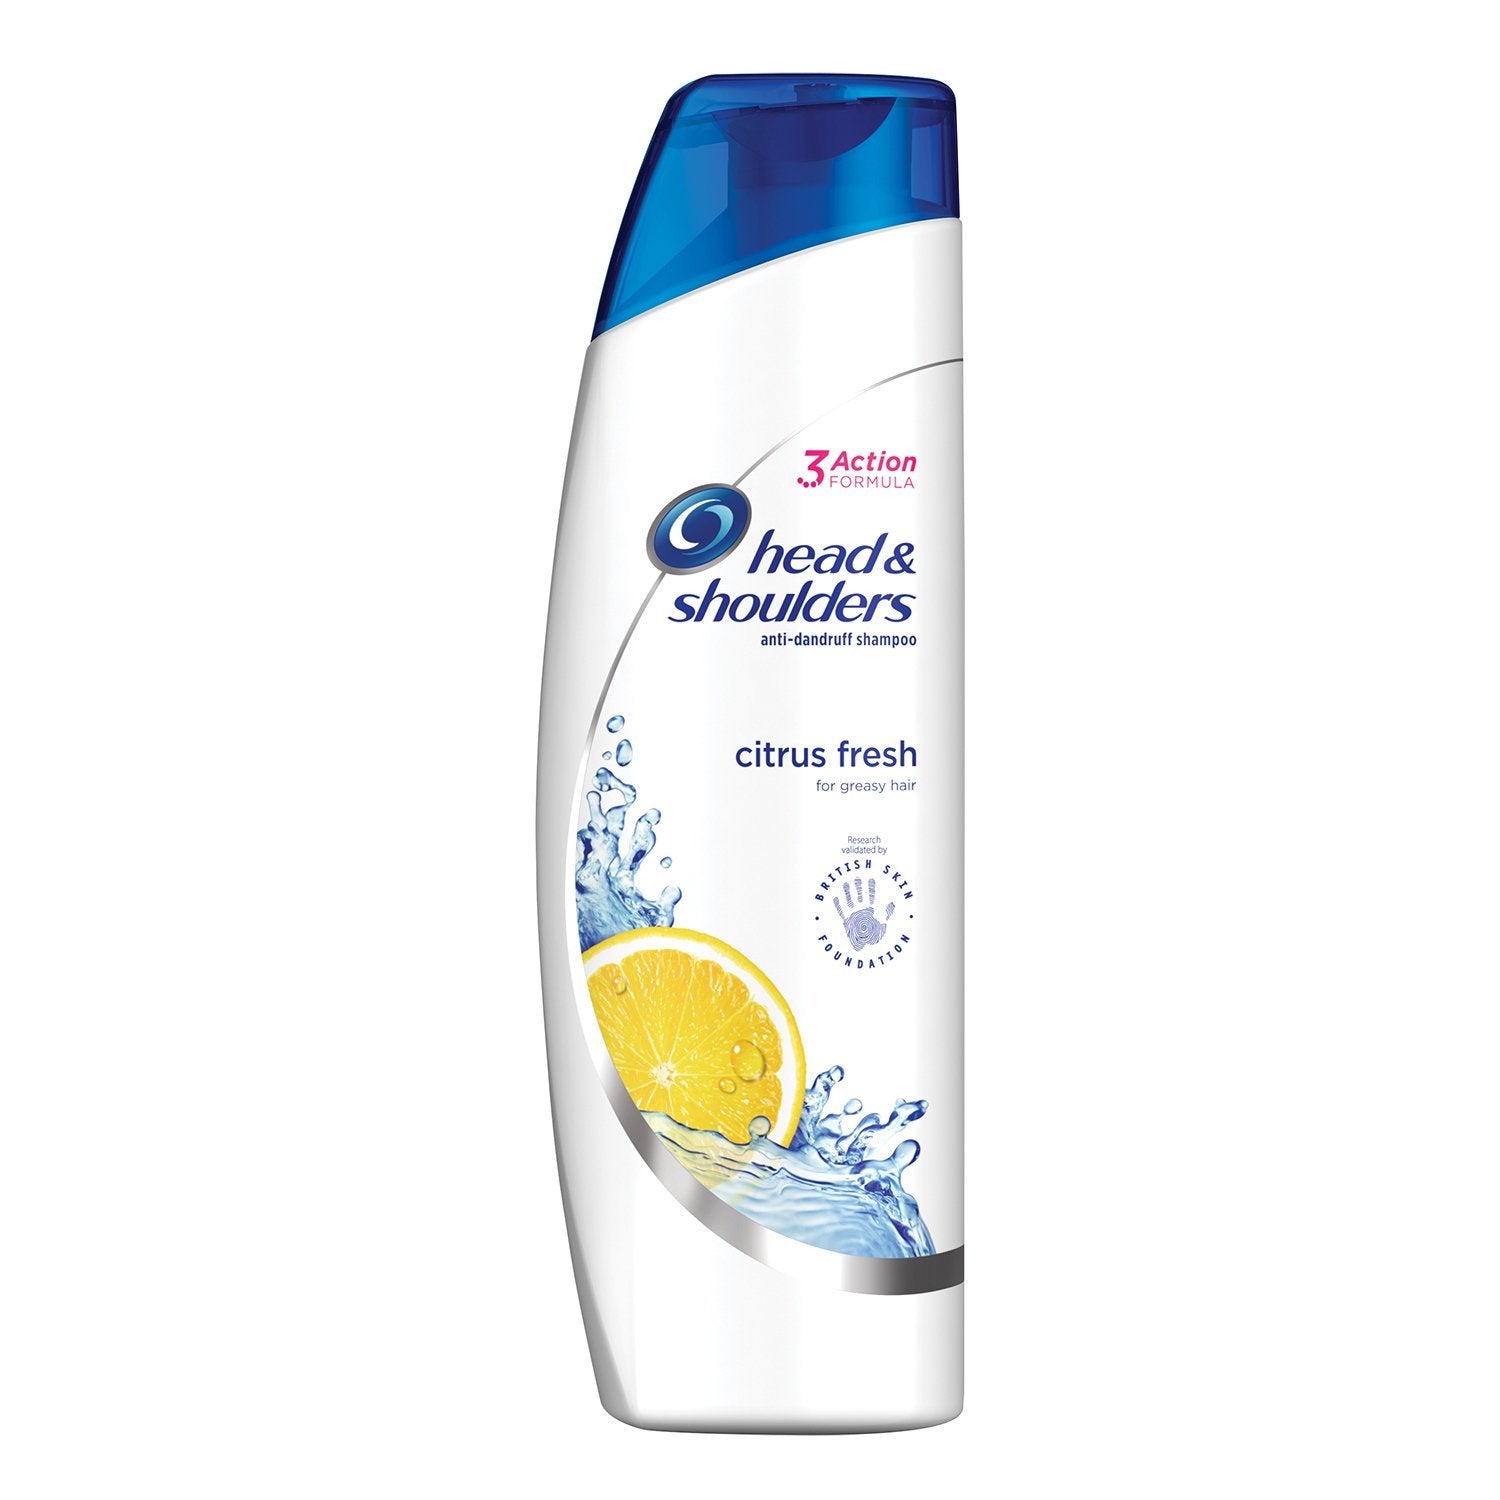 klap ambition Bakterie Head & Shoulders Citrus Fresh Shampoo, 400ml – Mullaco Online